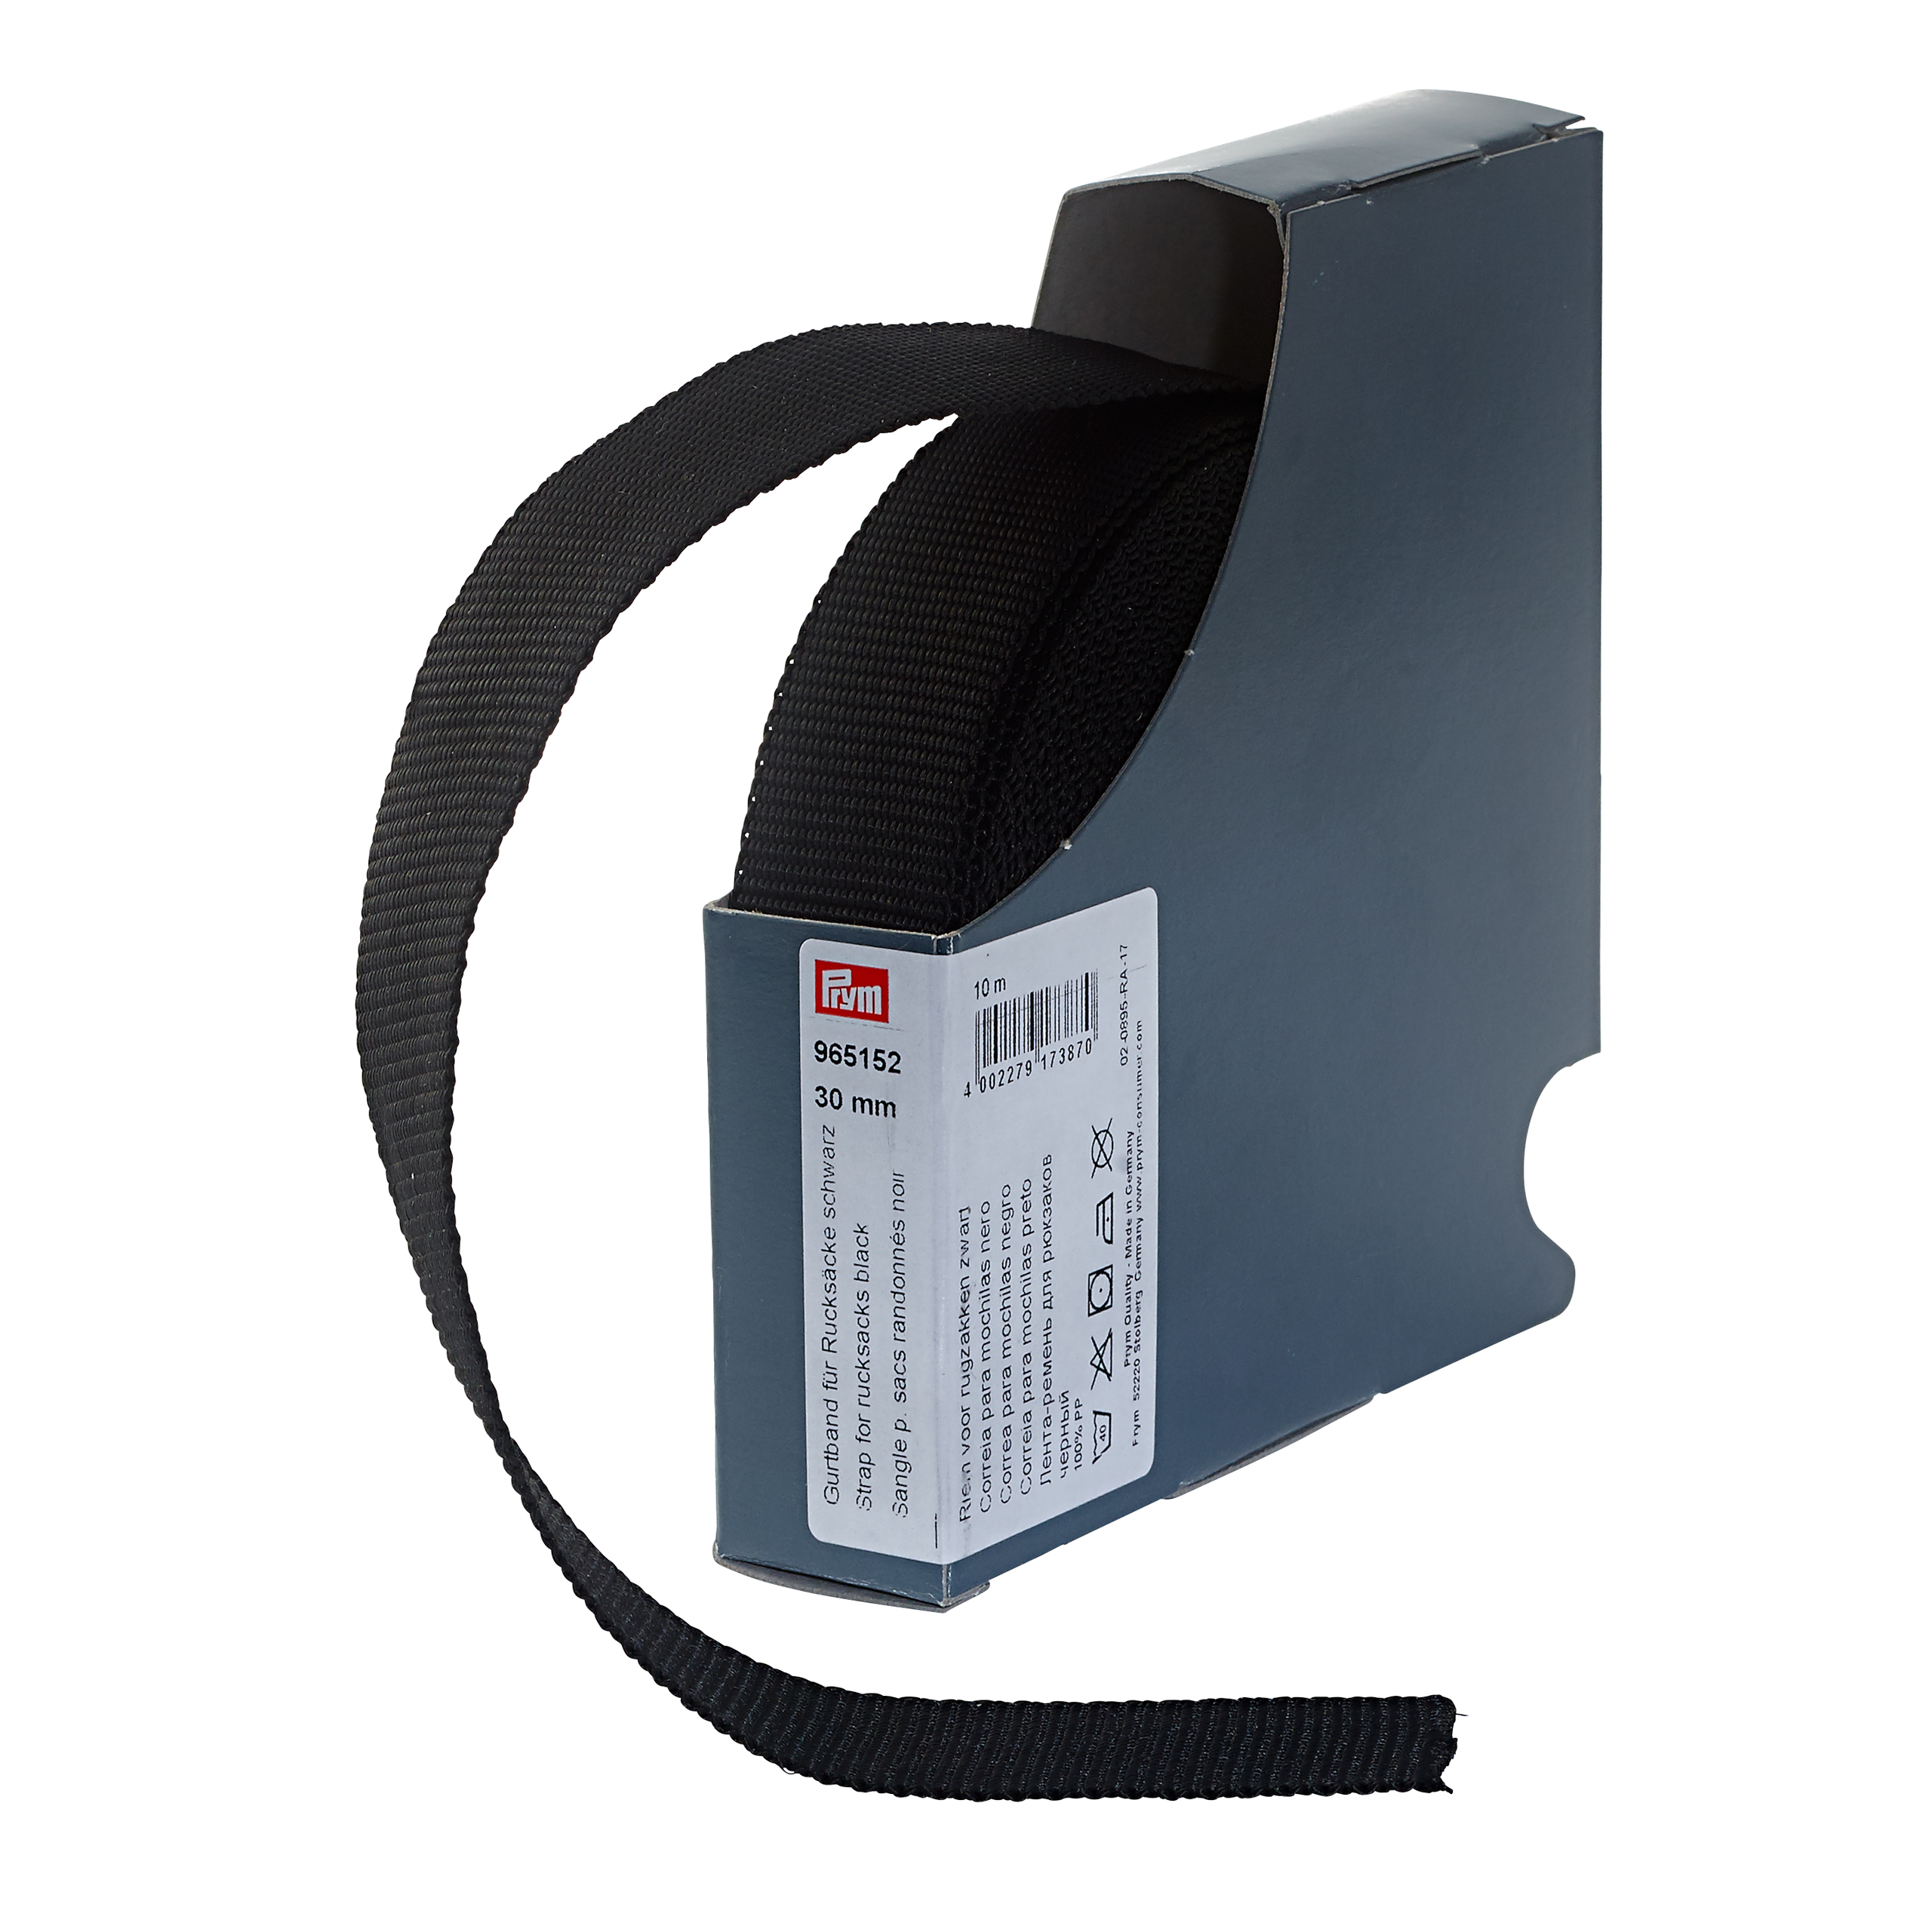 Gurtband für Rucksäcke 30 mm schwarz, Meterware